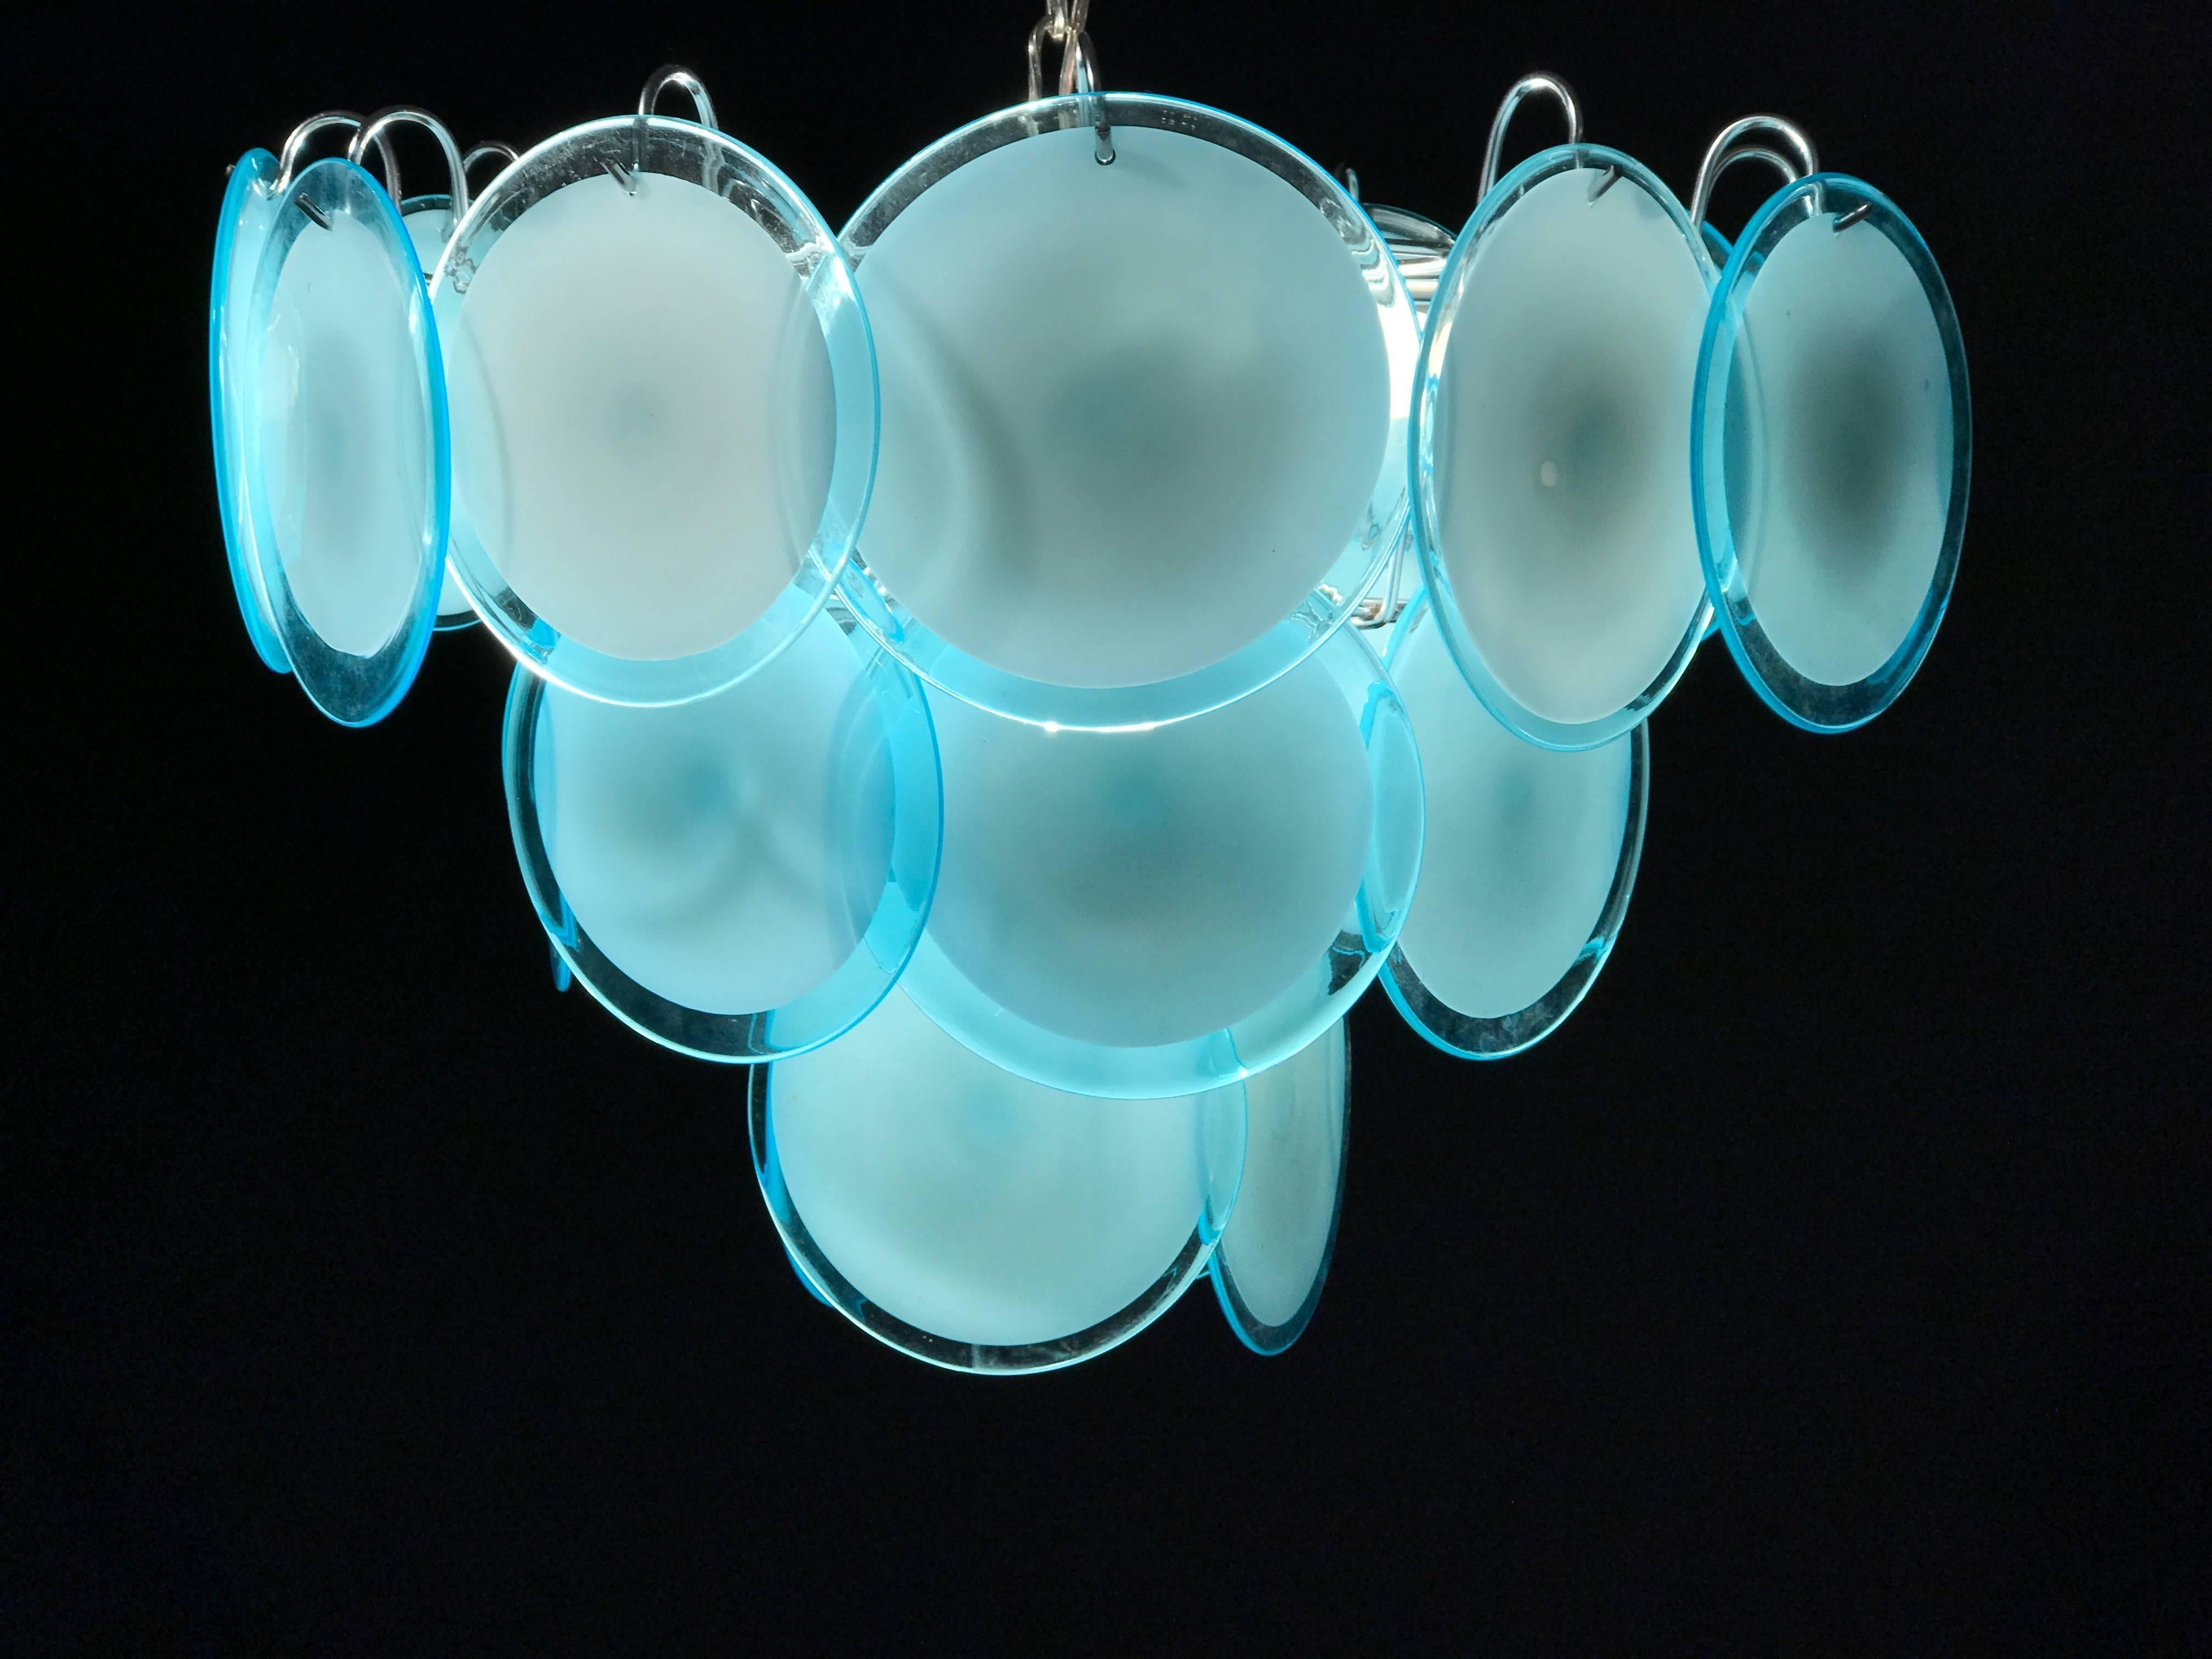 Die seltenen 24 türkisfarbenen Scheiben aus kostbarem Murano-Glas sind auf mehreren Ebenen angeordnet.
Neun E14-Glühbirnen.
Maße: Höhe ohne Kette 40 cm.